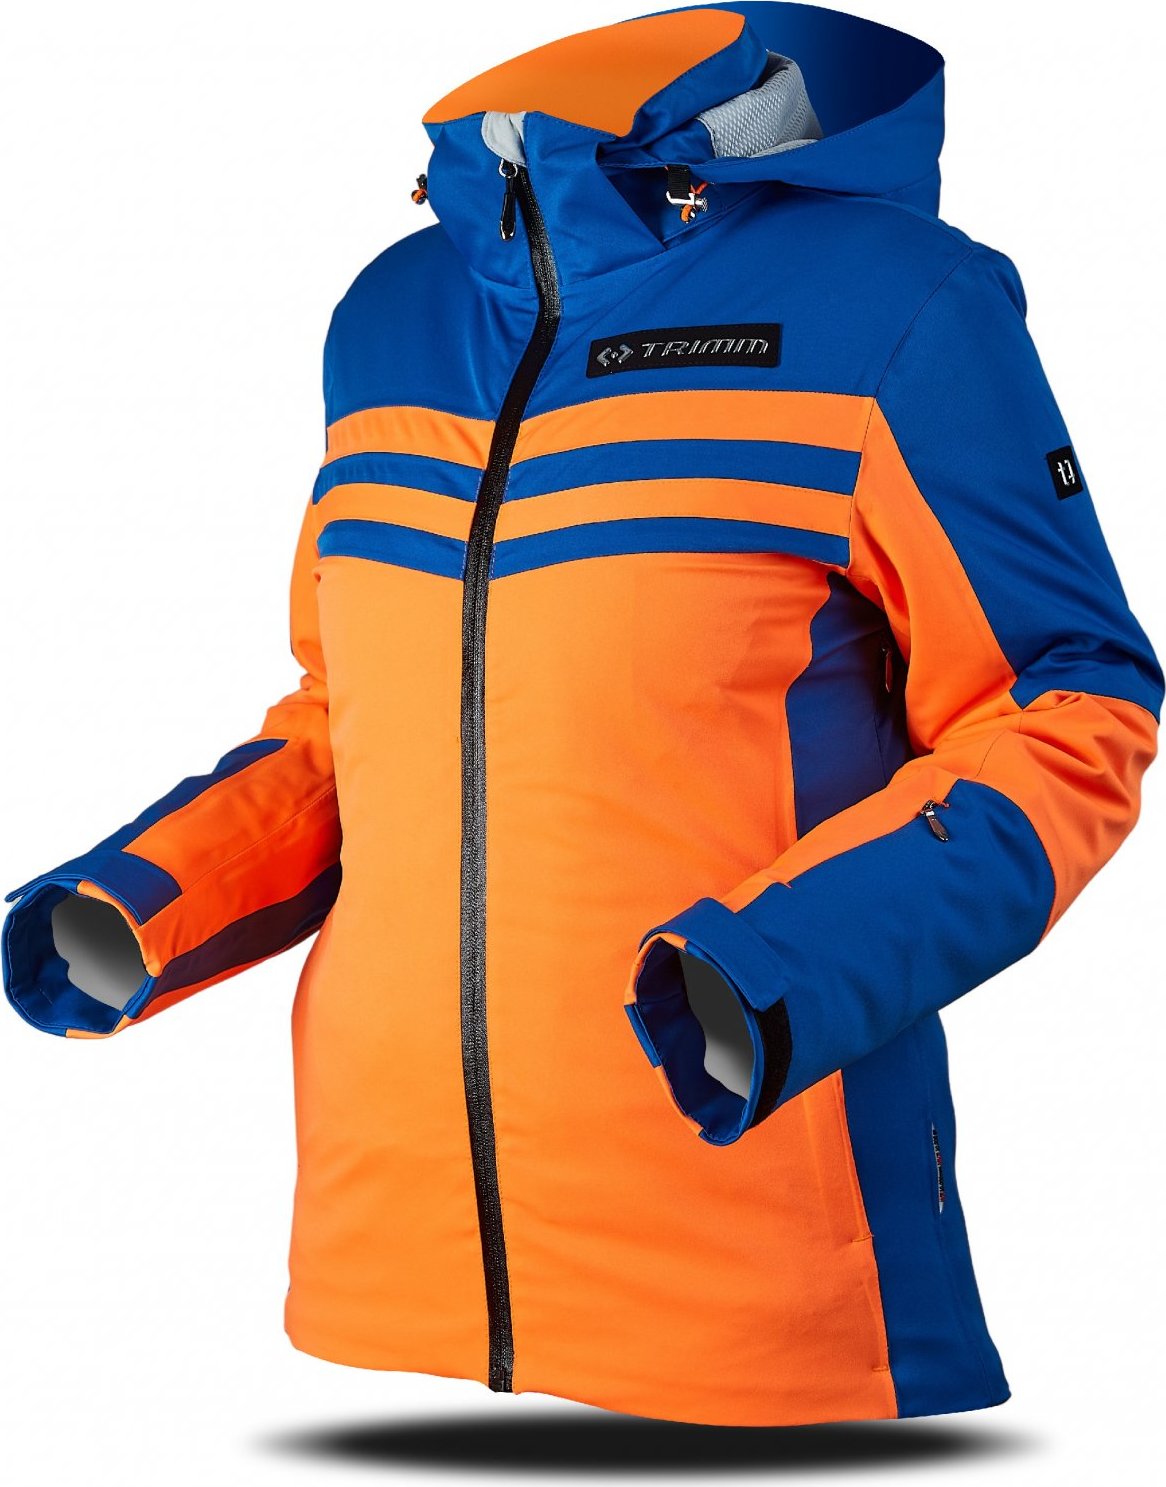 Dámská lyžařská bunda TRIMM Ilusion oranžová/modrá Velikost: XL, Barva: signal orange/jeans blue